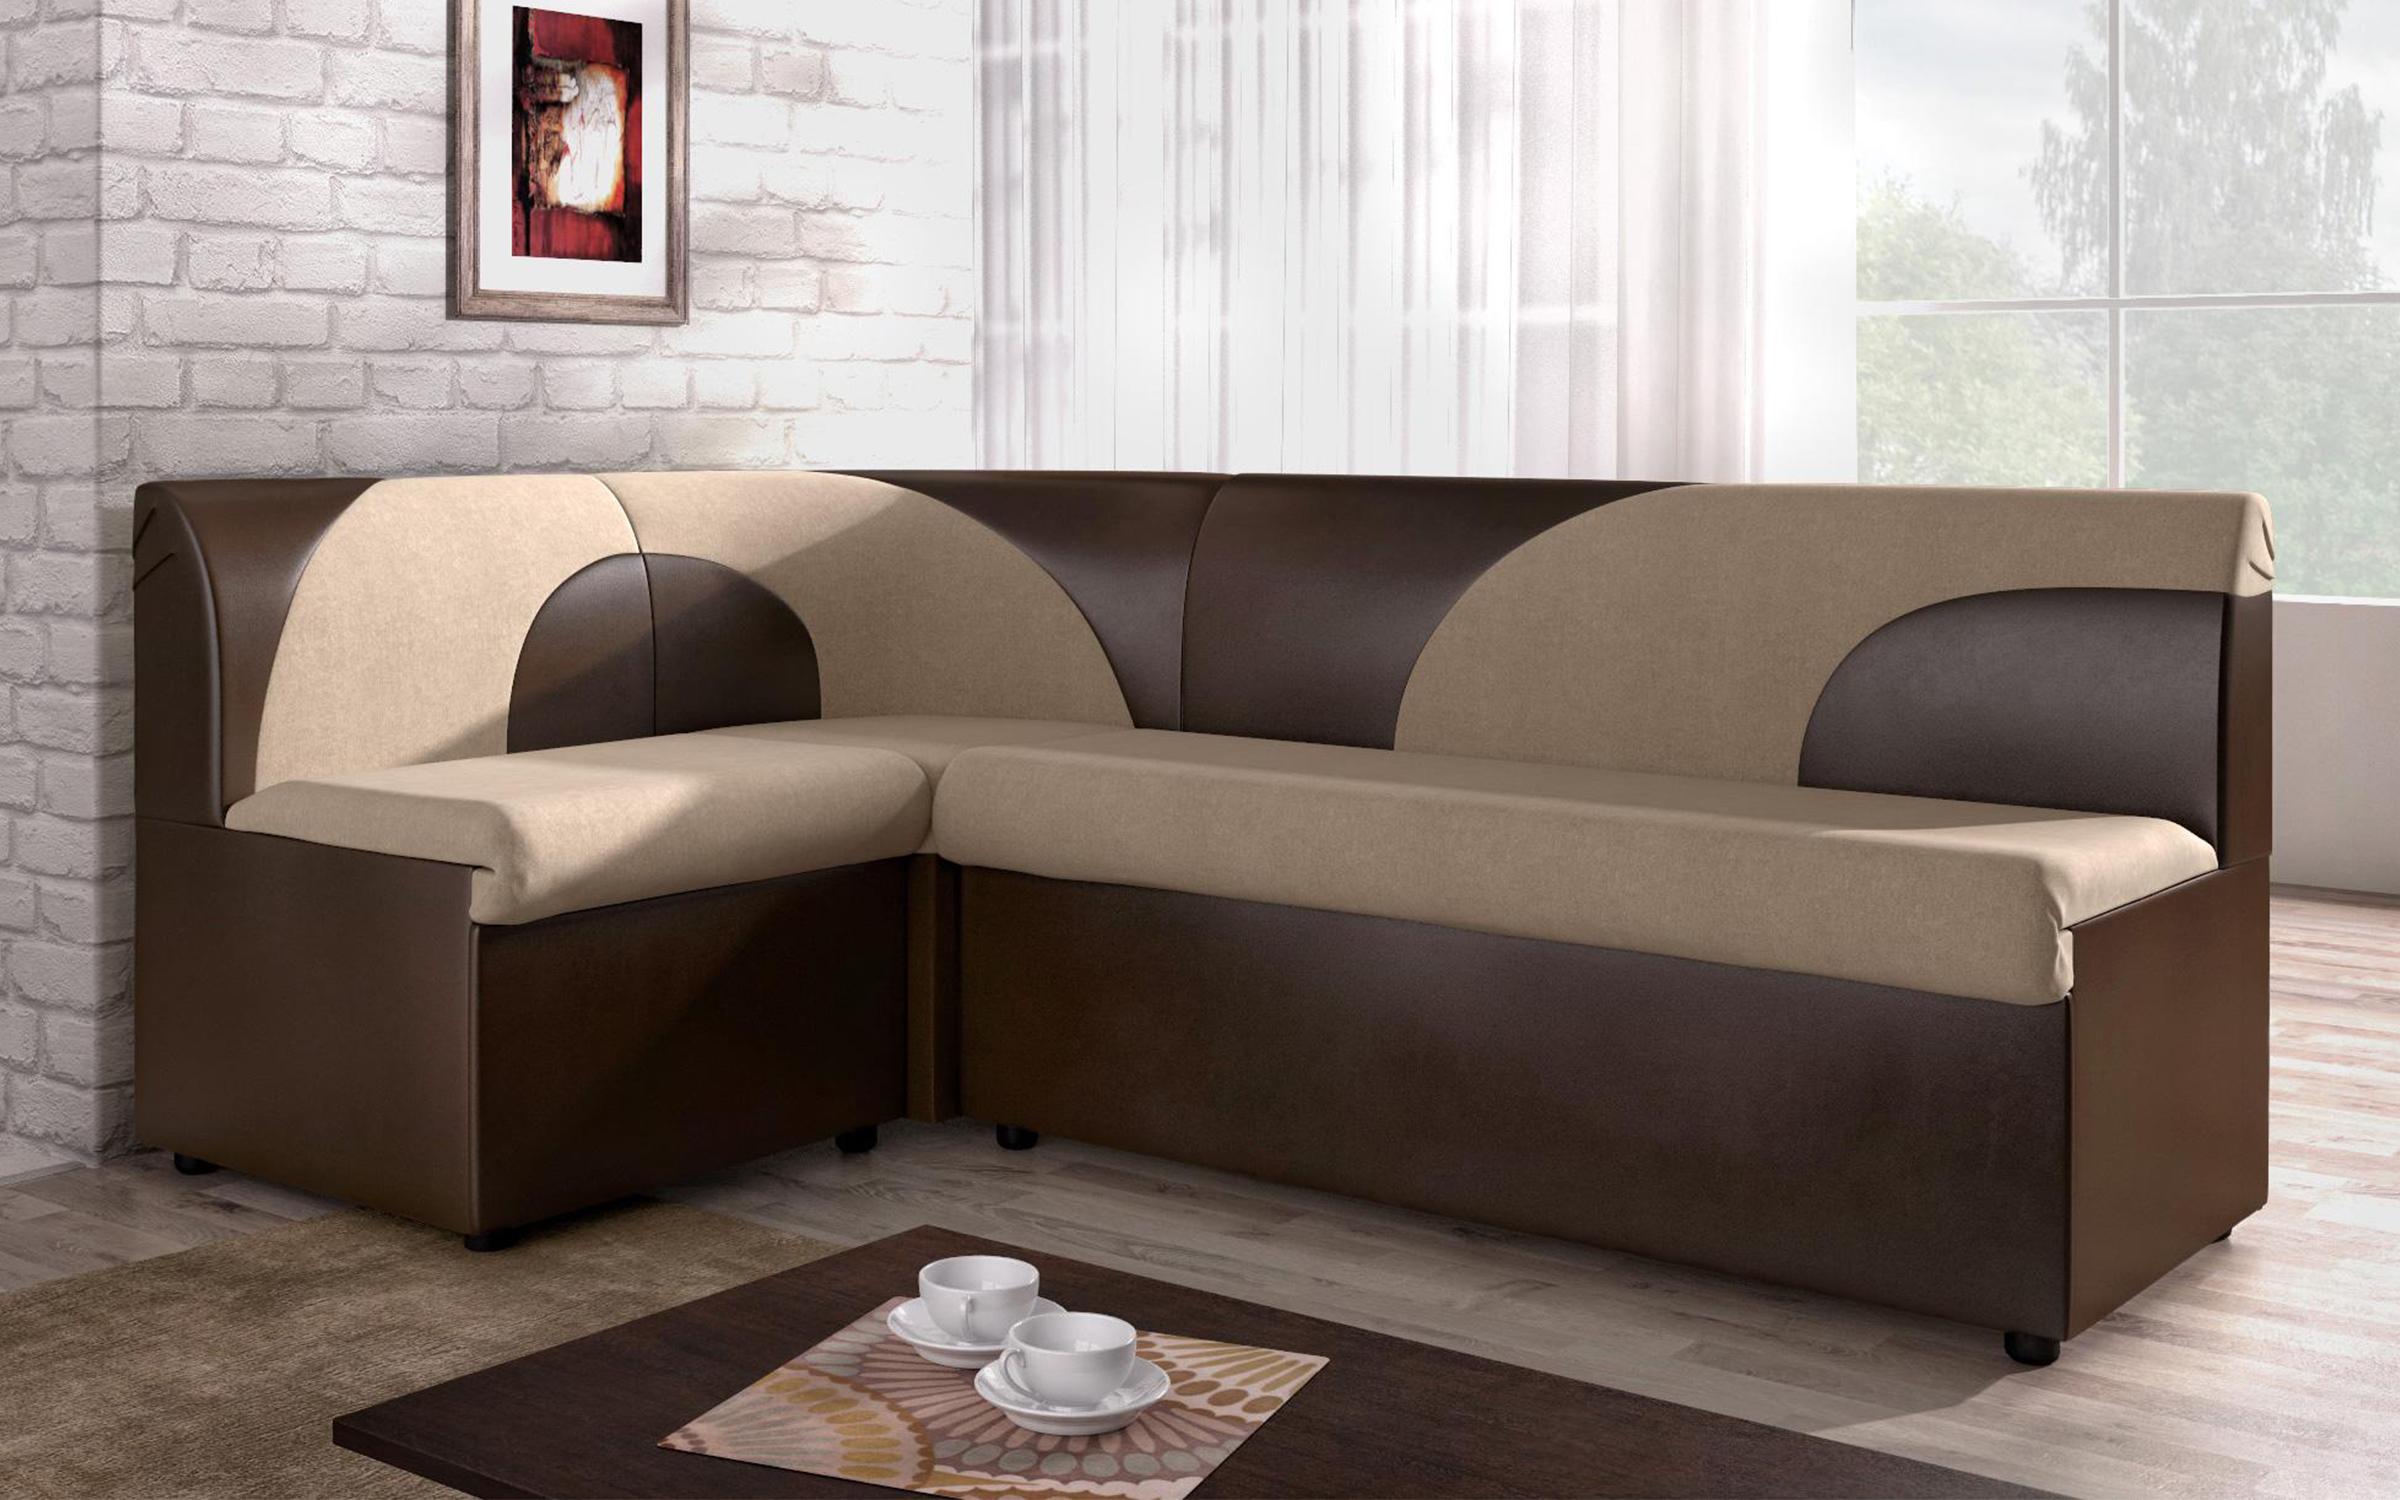 Γωνιακός καναπές κουζίνας Ara mini, μπεζ + καφέ  2